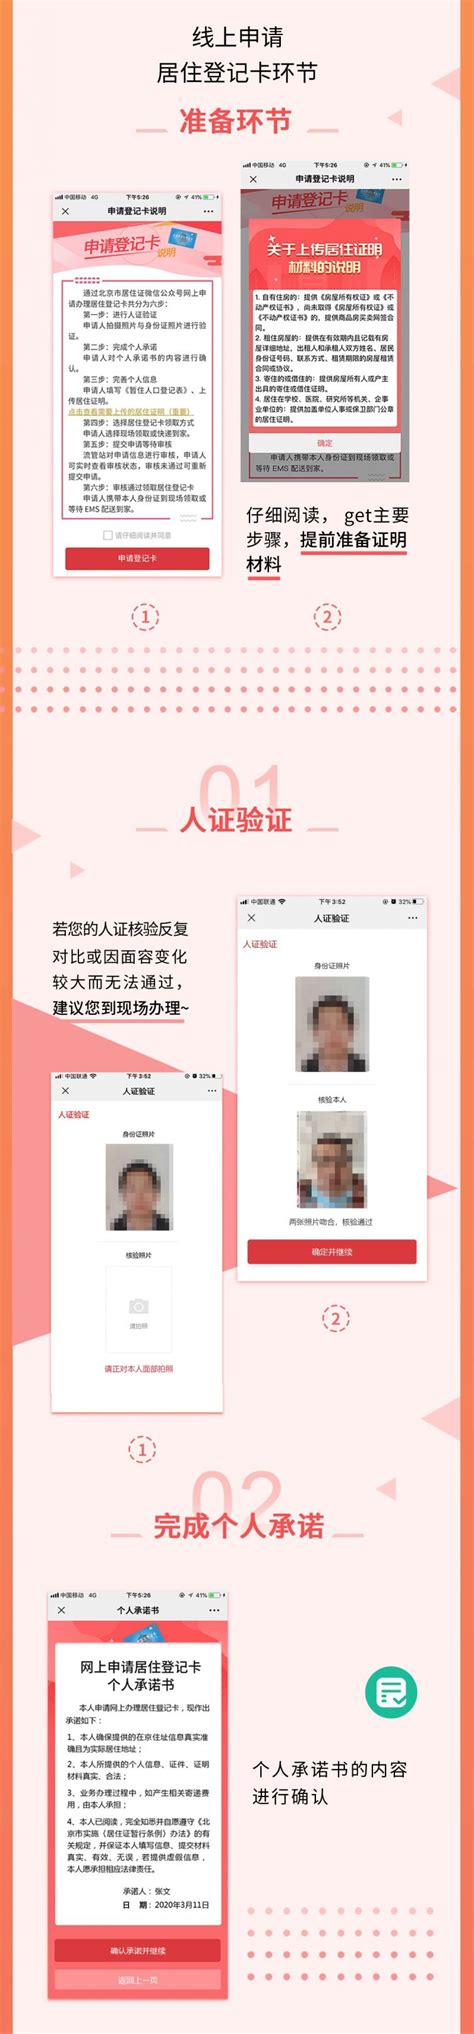 2020年北京居住登记卡如何申请?一图读懂网上申请居住登记卡- 北京本地宝